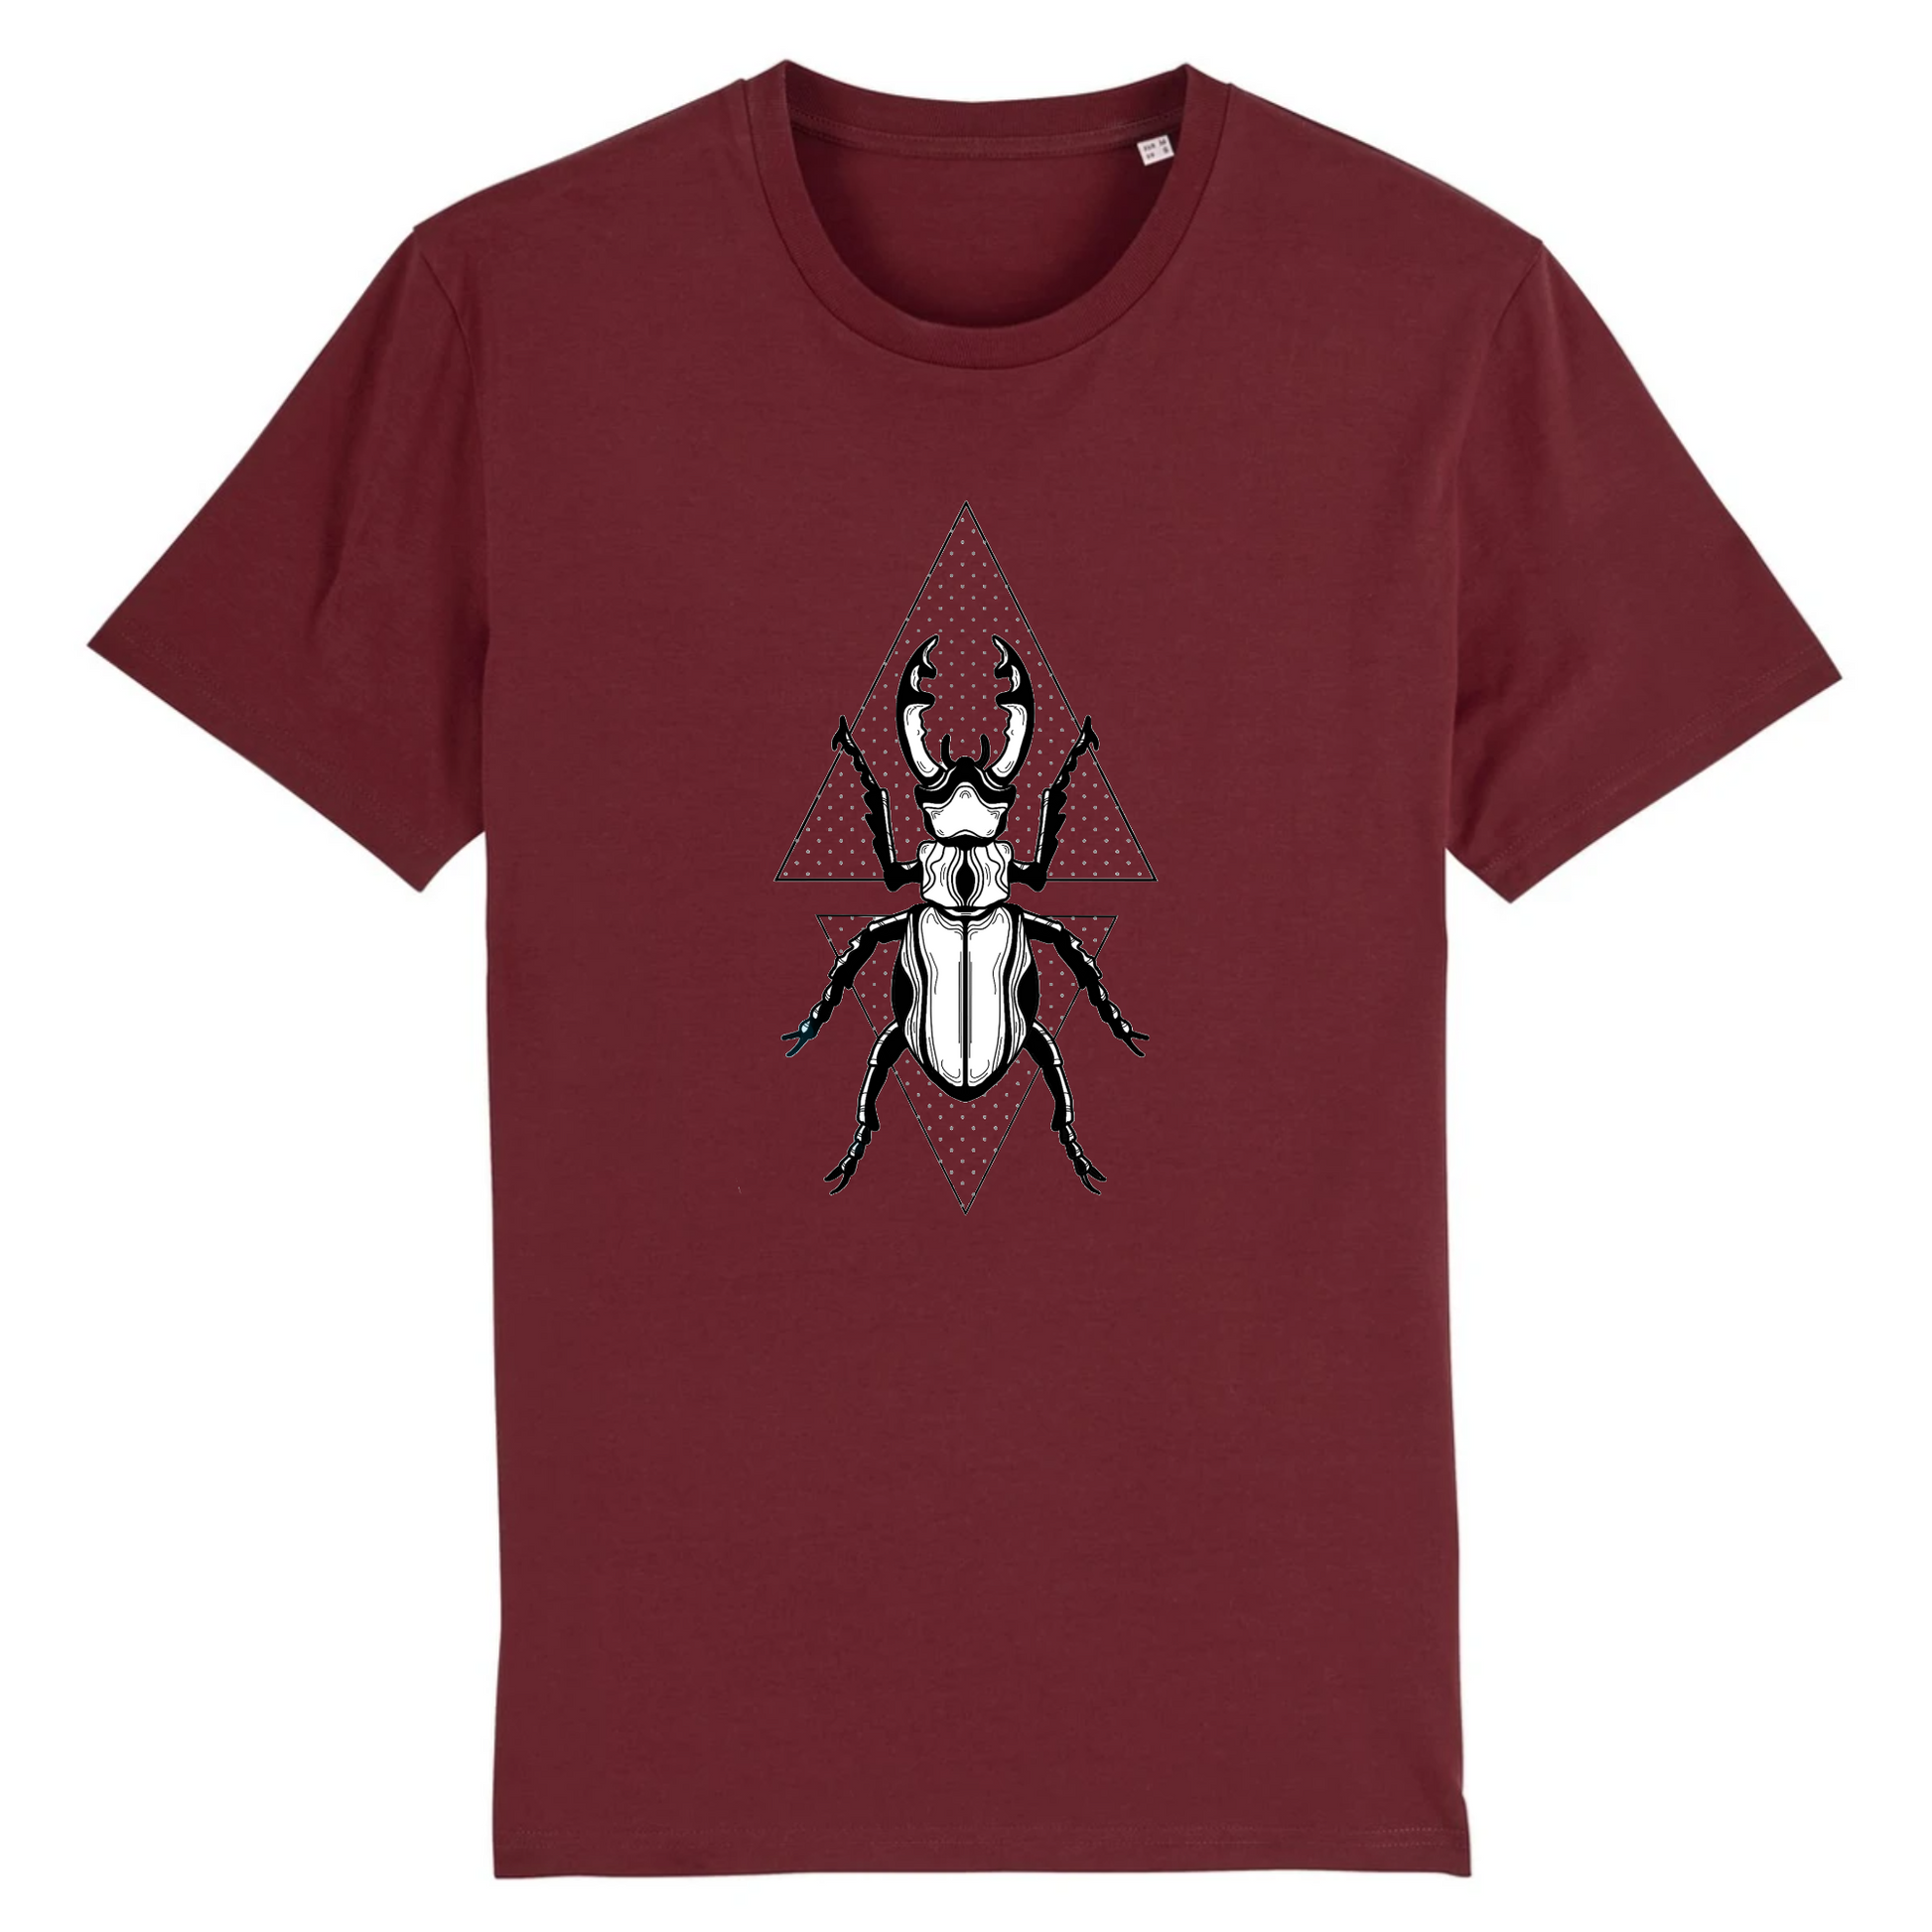 T-shirt homme coton bio | Graphisme insecte coléoptère | bordeaux